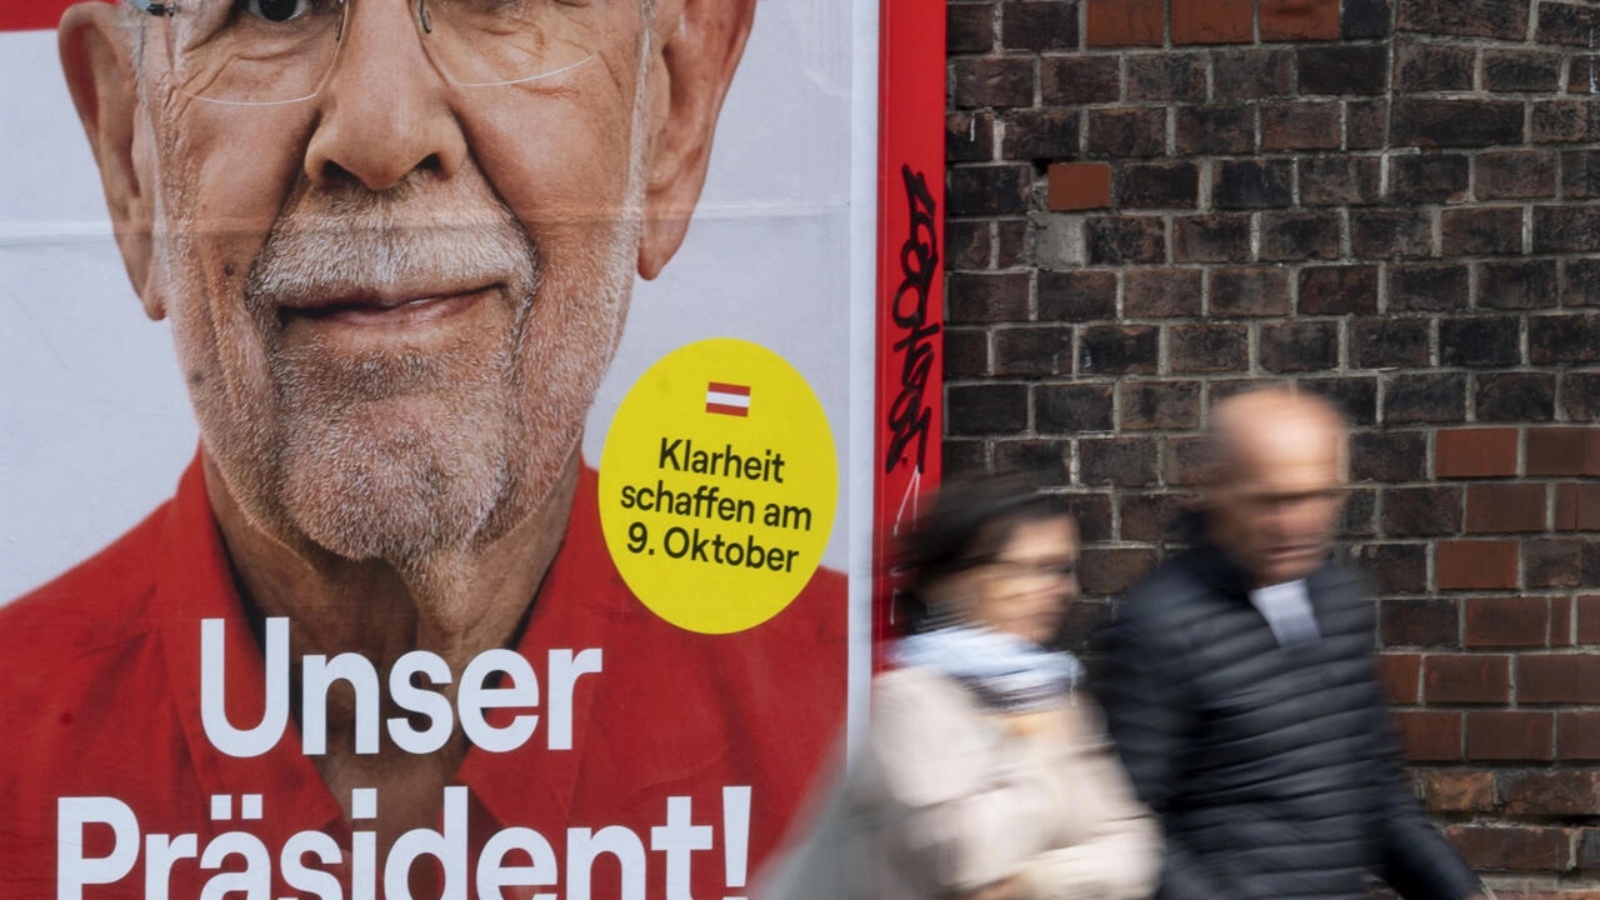 يُظهر ملصق انتخابي في مدينة سينا ​​رئيس النمسا ألكسندر فان دير بيلين، الذي من المتوقع أن يفوز بفترة ولاية ثانية في منصبه